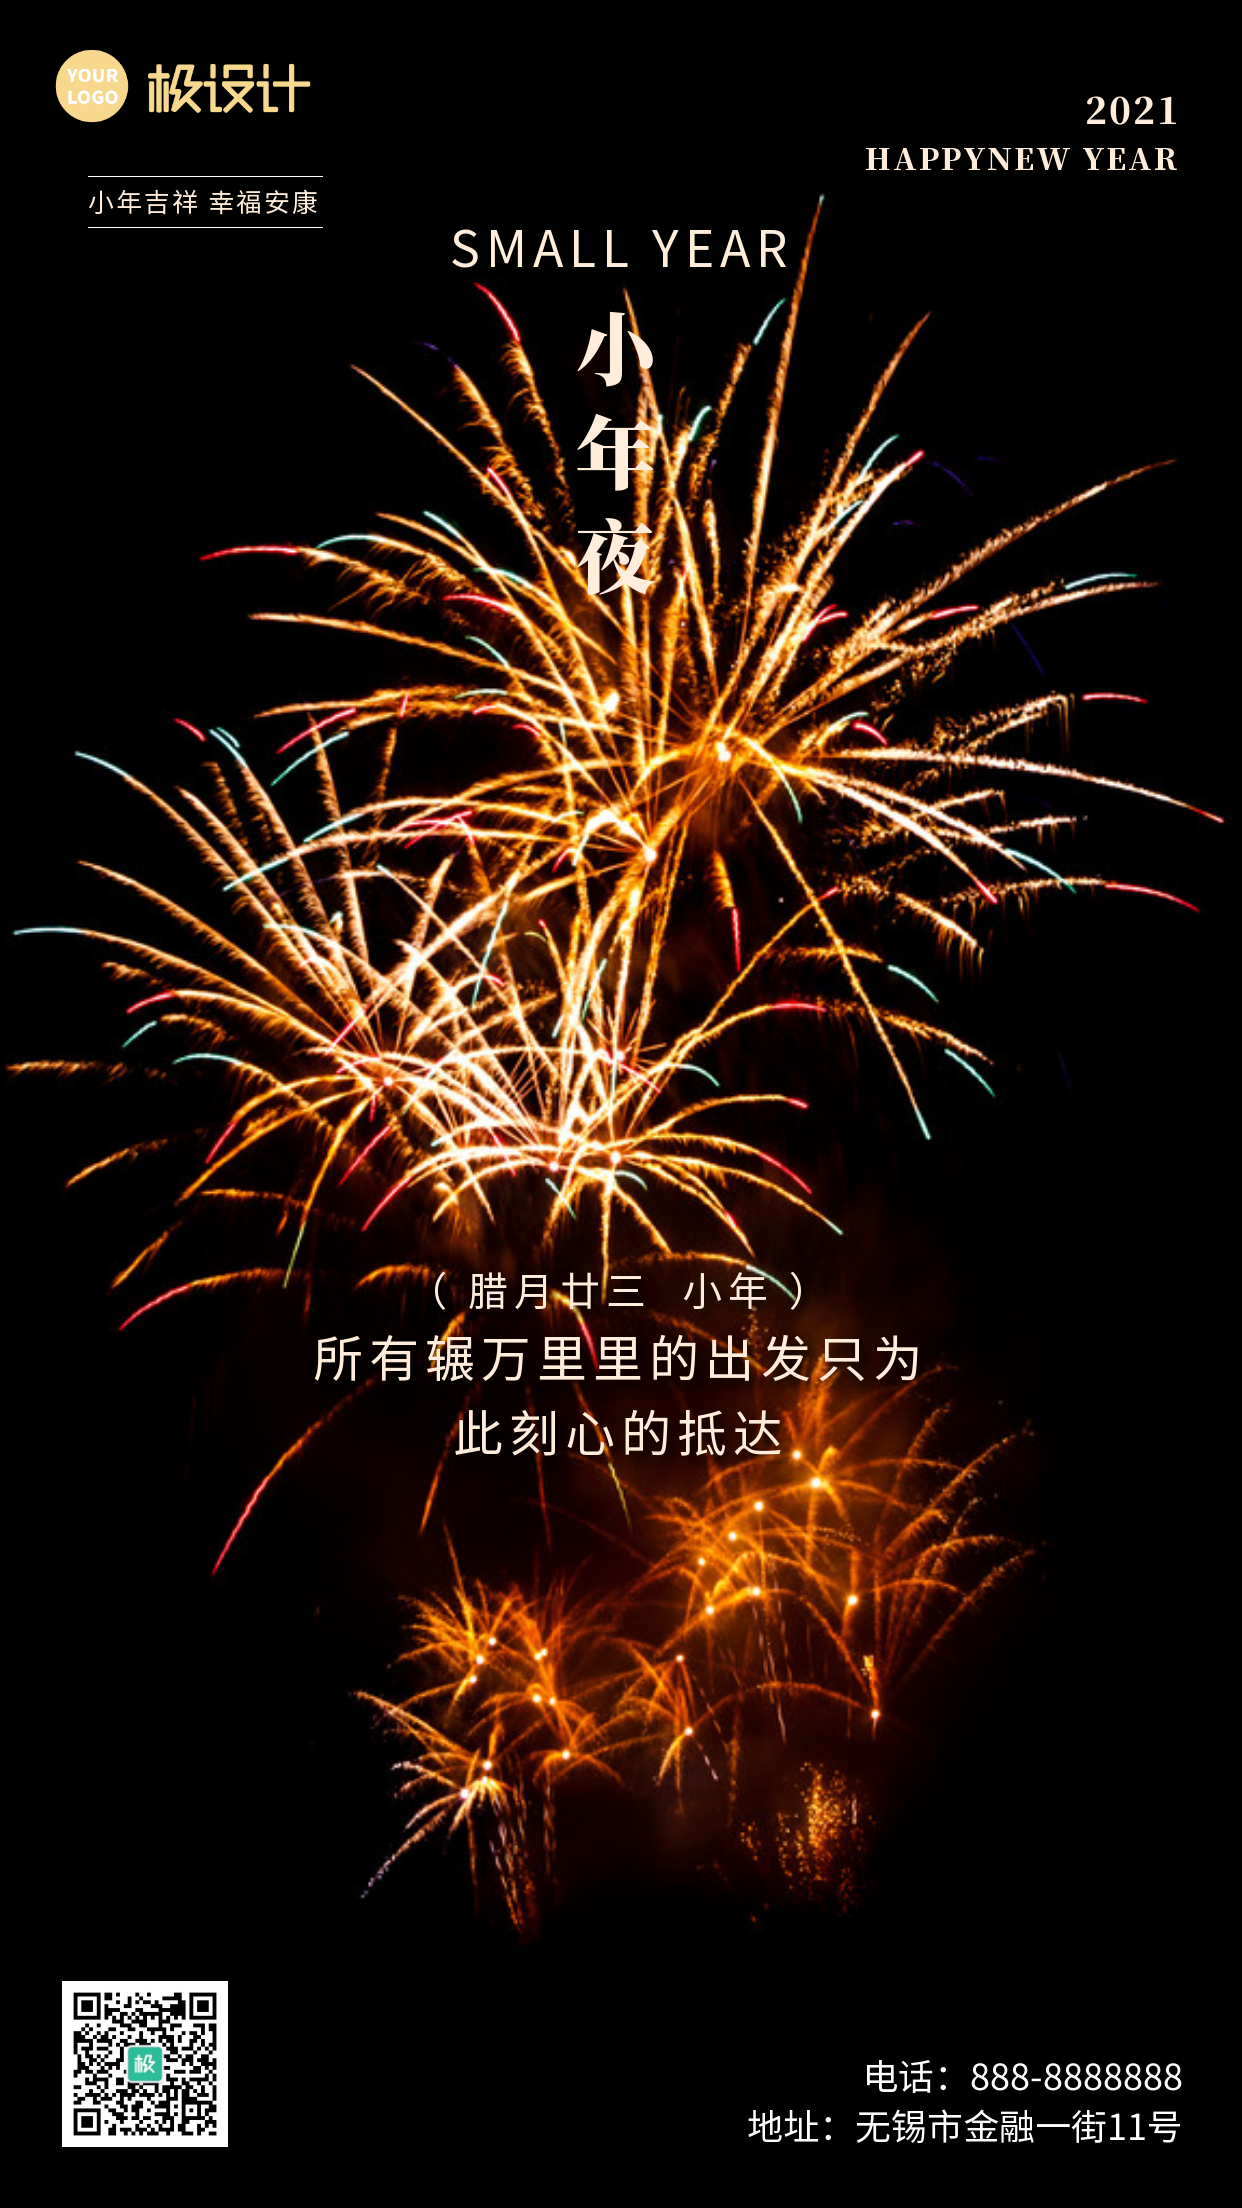 小年夜节日祝福诚挚温暖摄影图手机海报